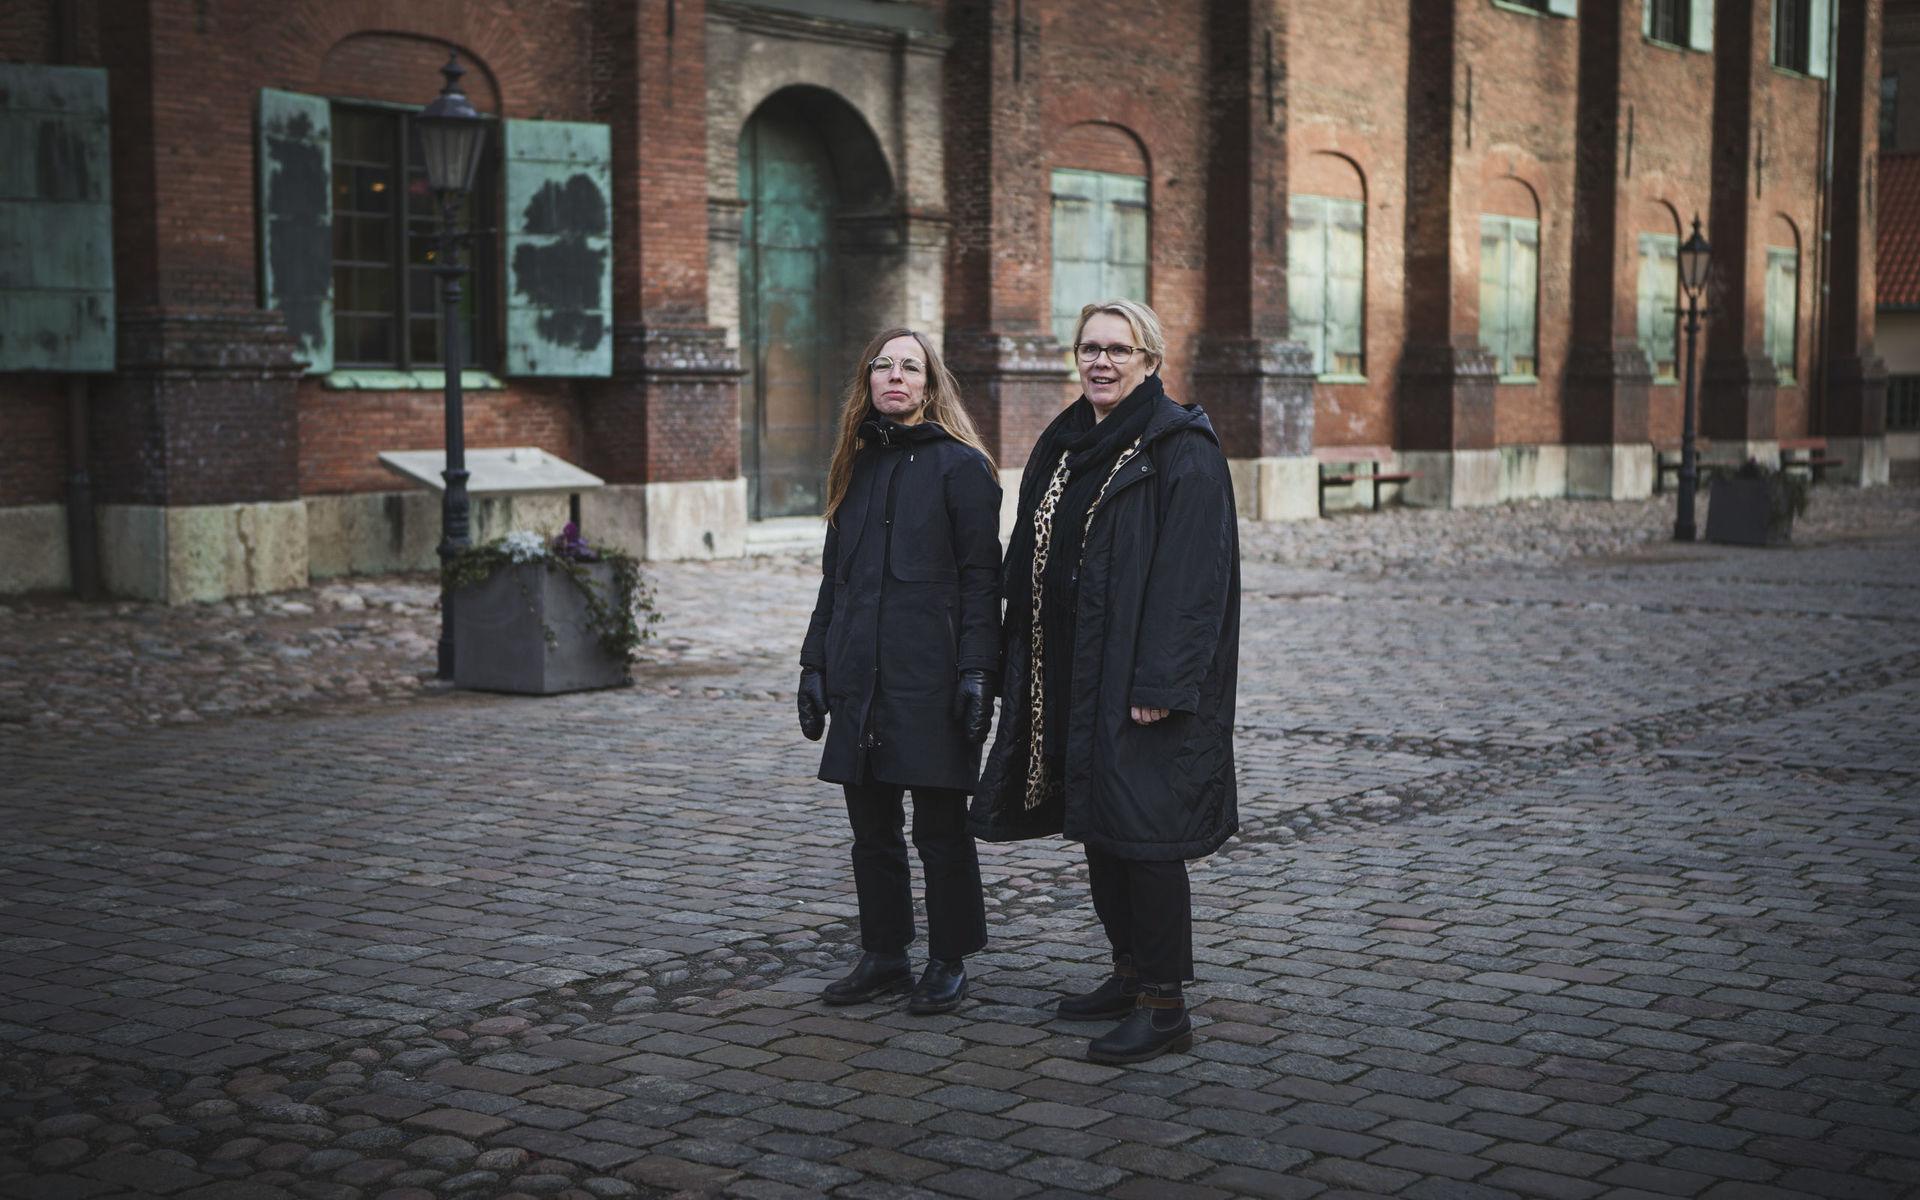 Göteborgs kommun var först i världen med att erbjuda frivillig samtalsbehandling till sexköpare, berättar Maia Strufve och Eva-Lotta Hansson-Palmqvist. 